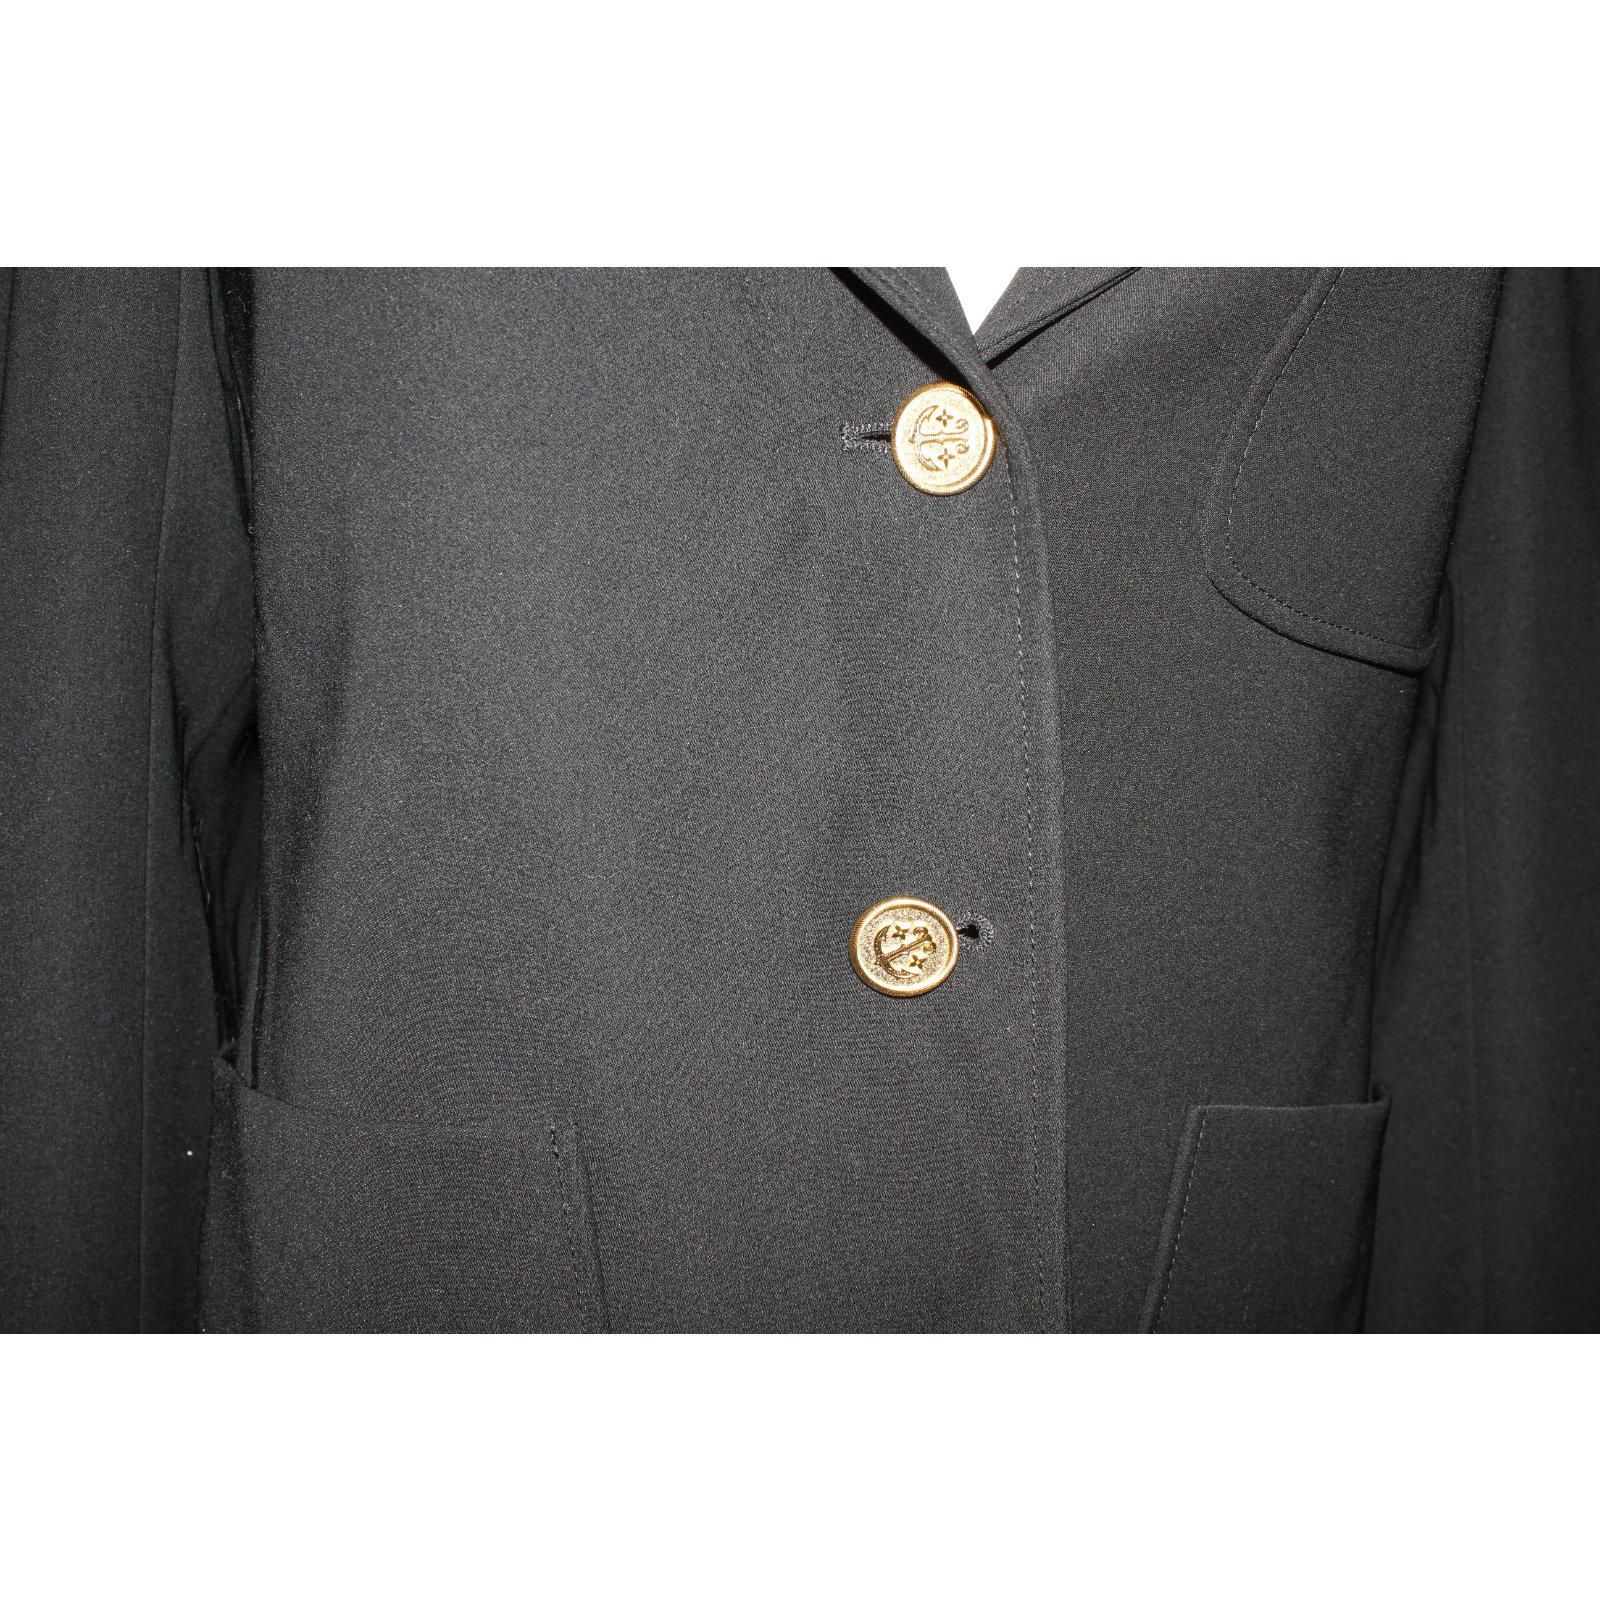 Louis Vuitton Black Uniform Suit Blazer Jacket Gold Buttons Size